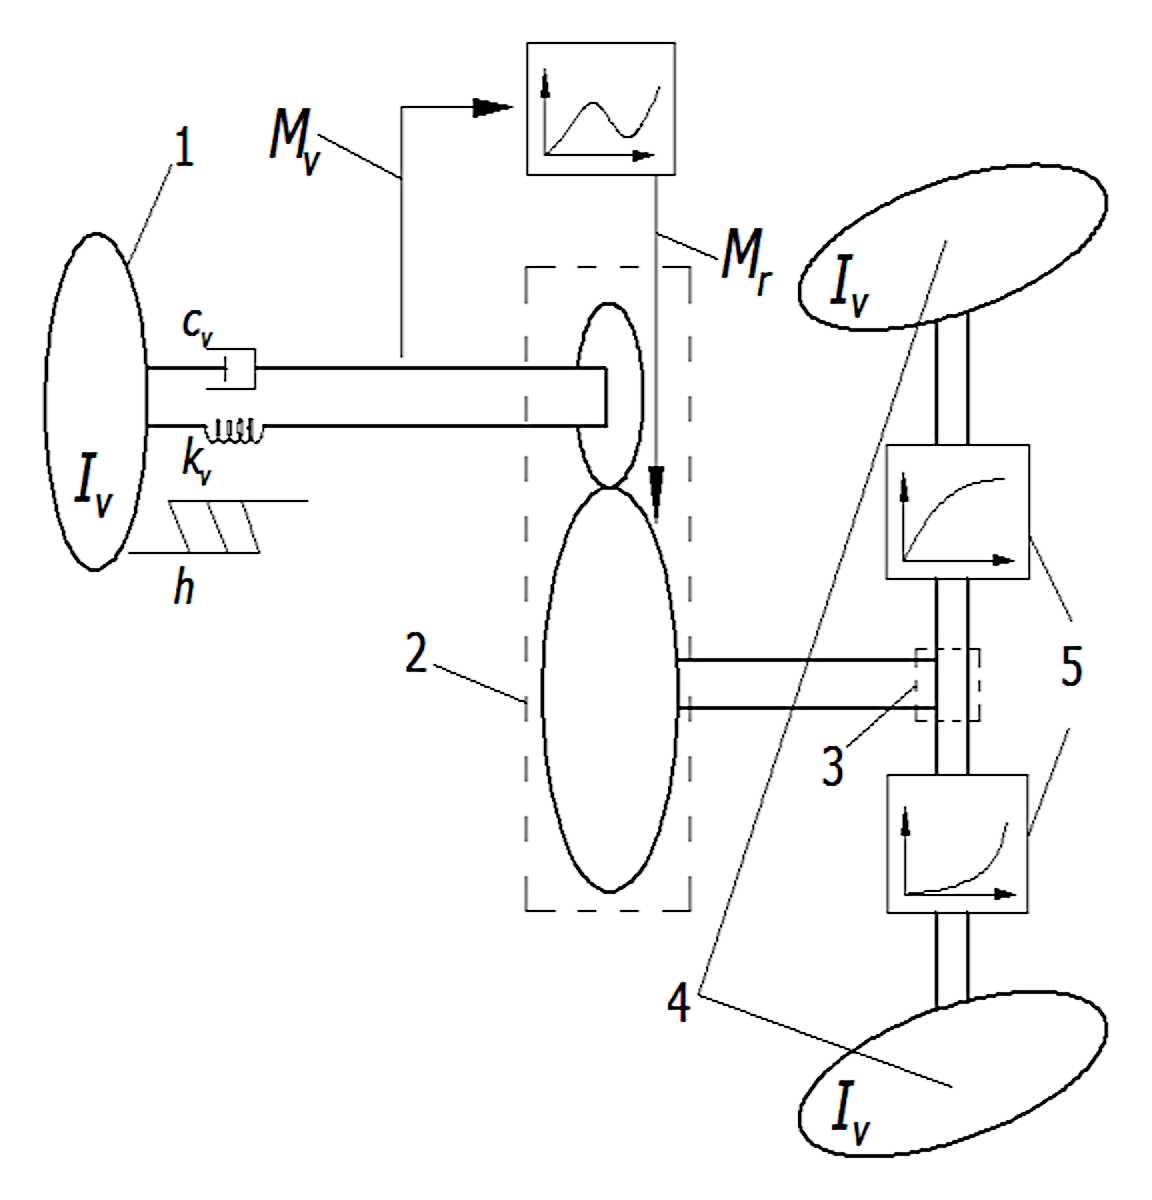 4 pav. Vairavimo sistemos schema ir parametrai / Fig. 4. Steering system diagram and parameters